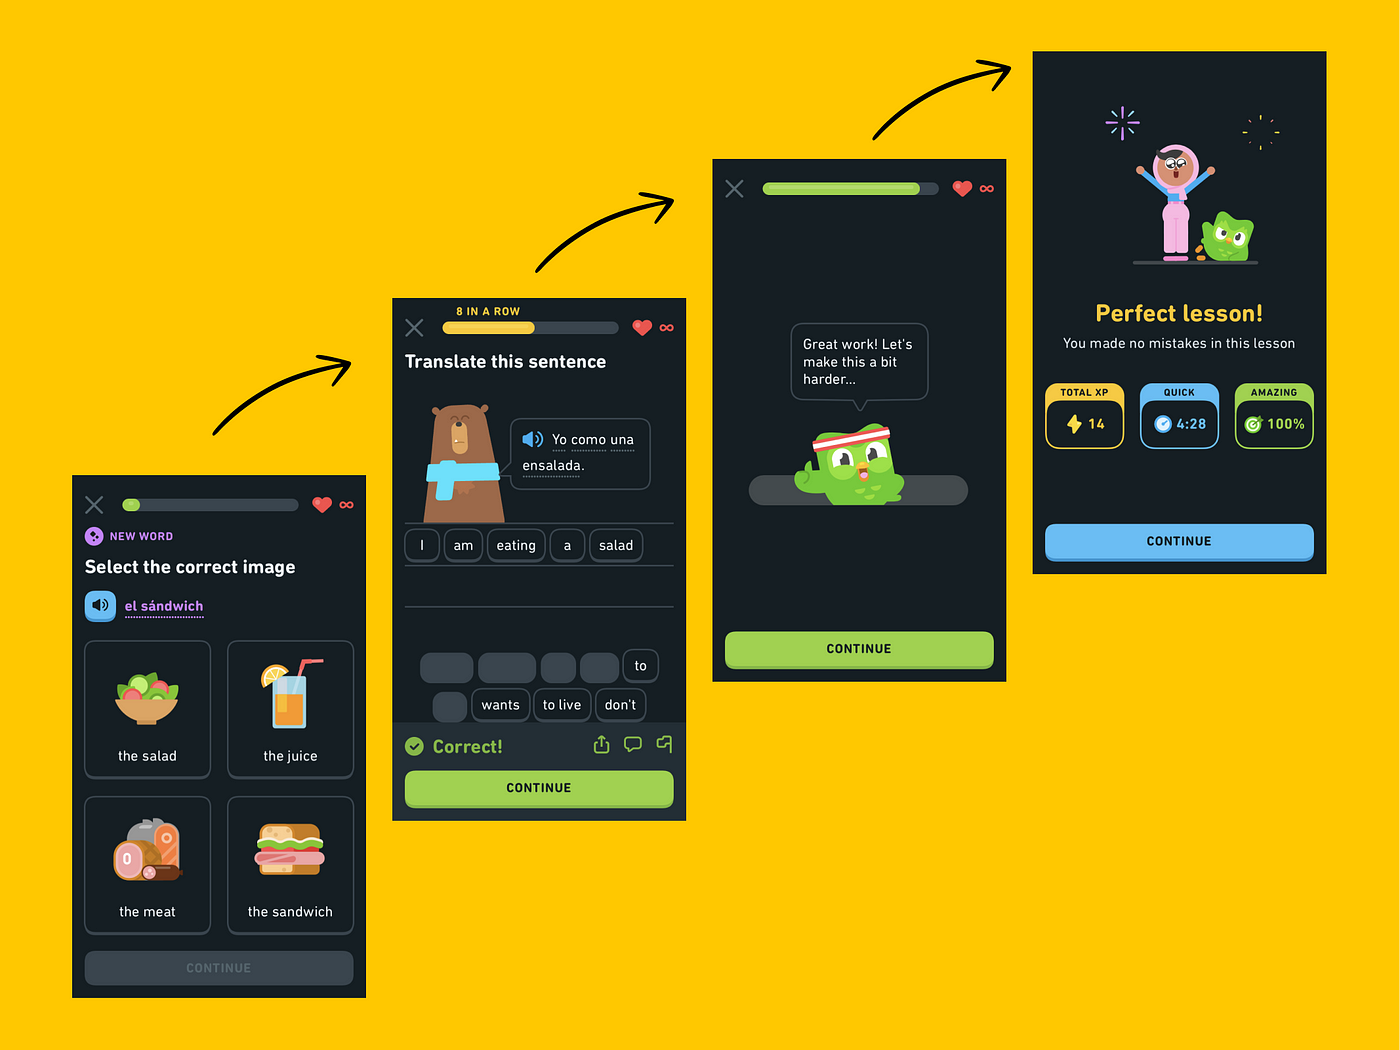 Gamification appliquée dans l'application mobile Duolingo